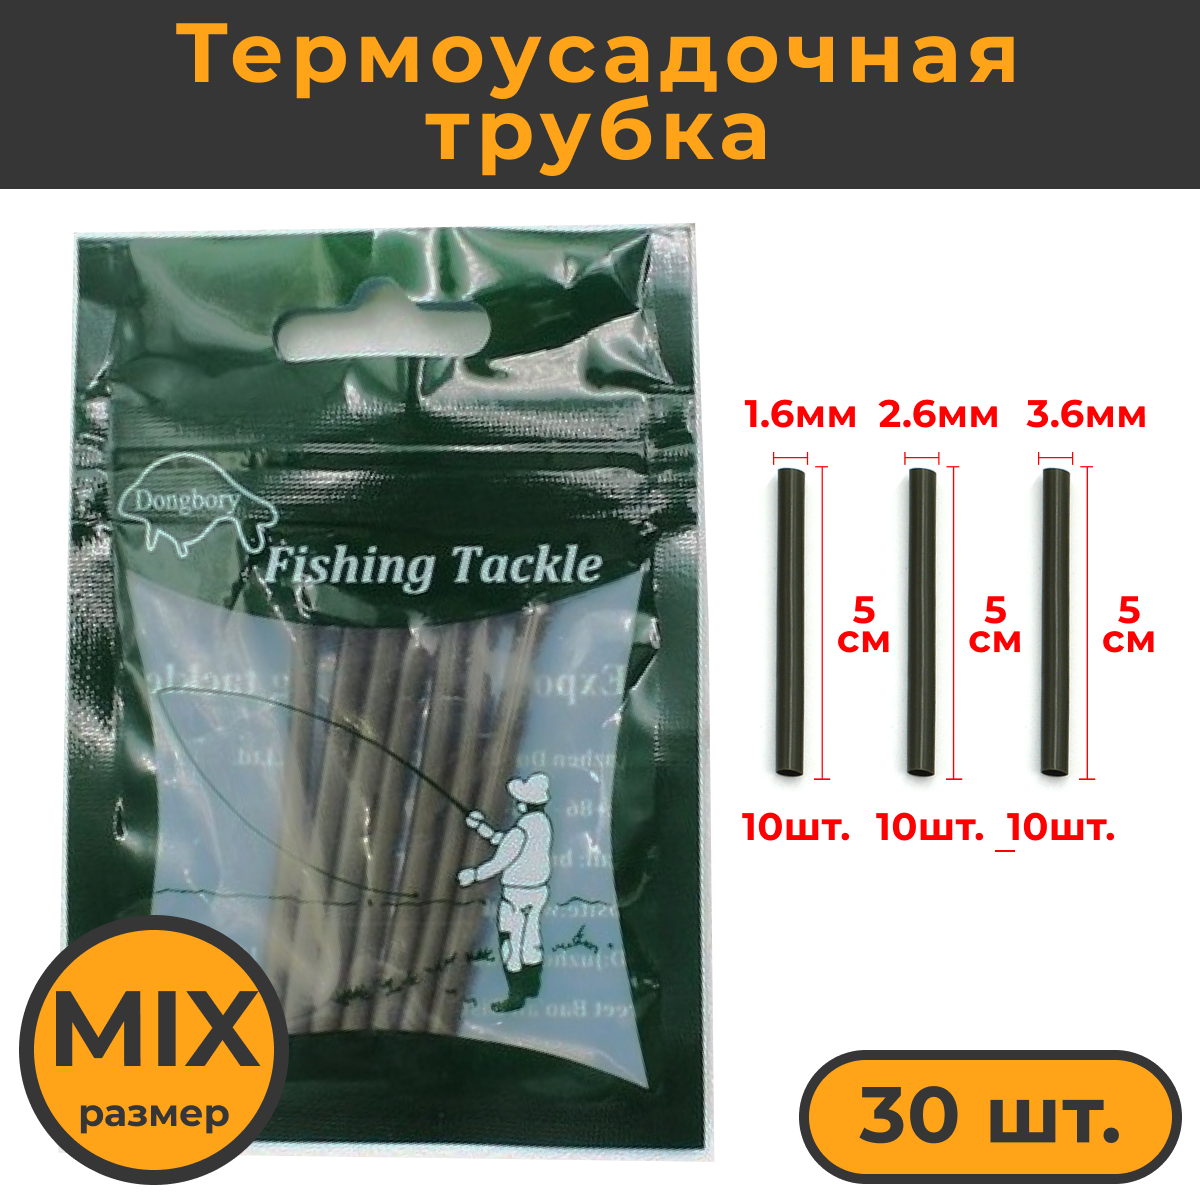 Термоусадка для карповых поводков 30шт размер: S M L по 10шт / Термоусадочная трубка рыболовная / термоусадочные трубки / Кембрики рыболовные